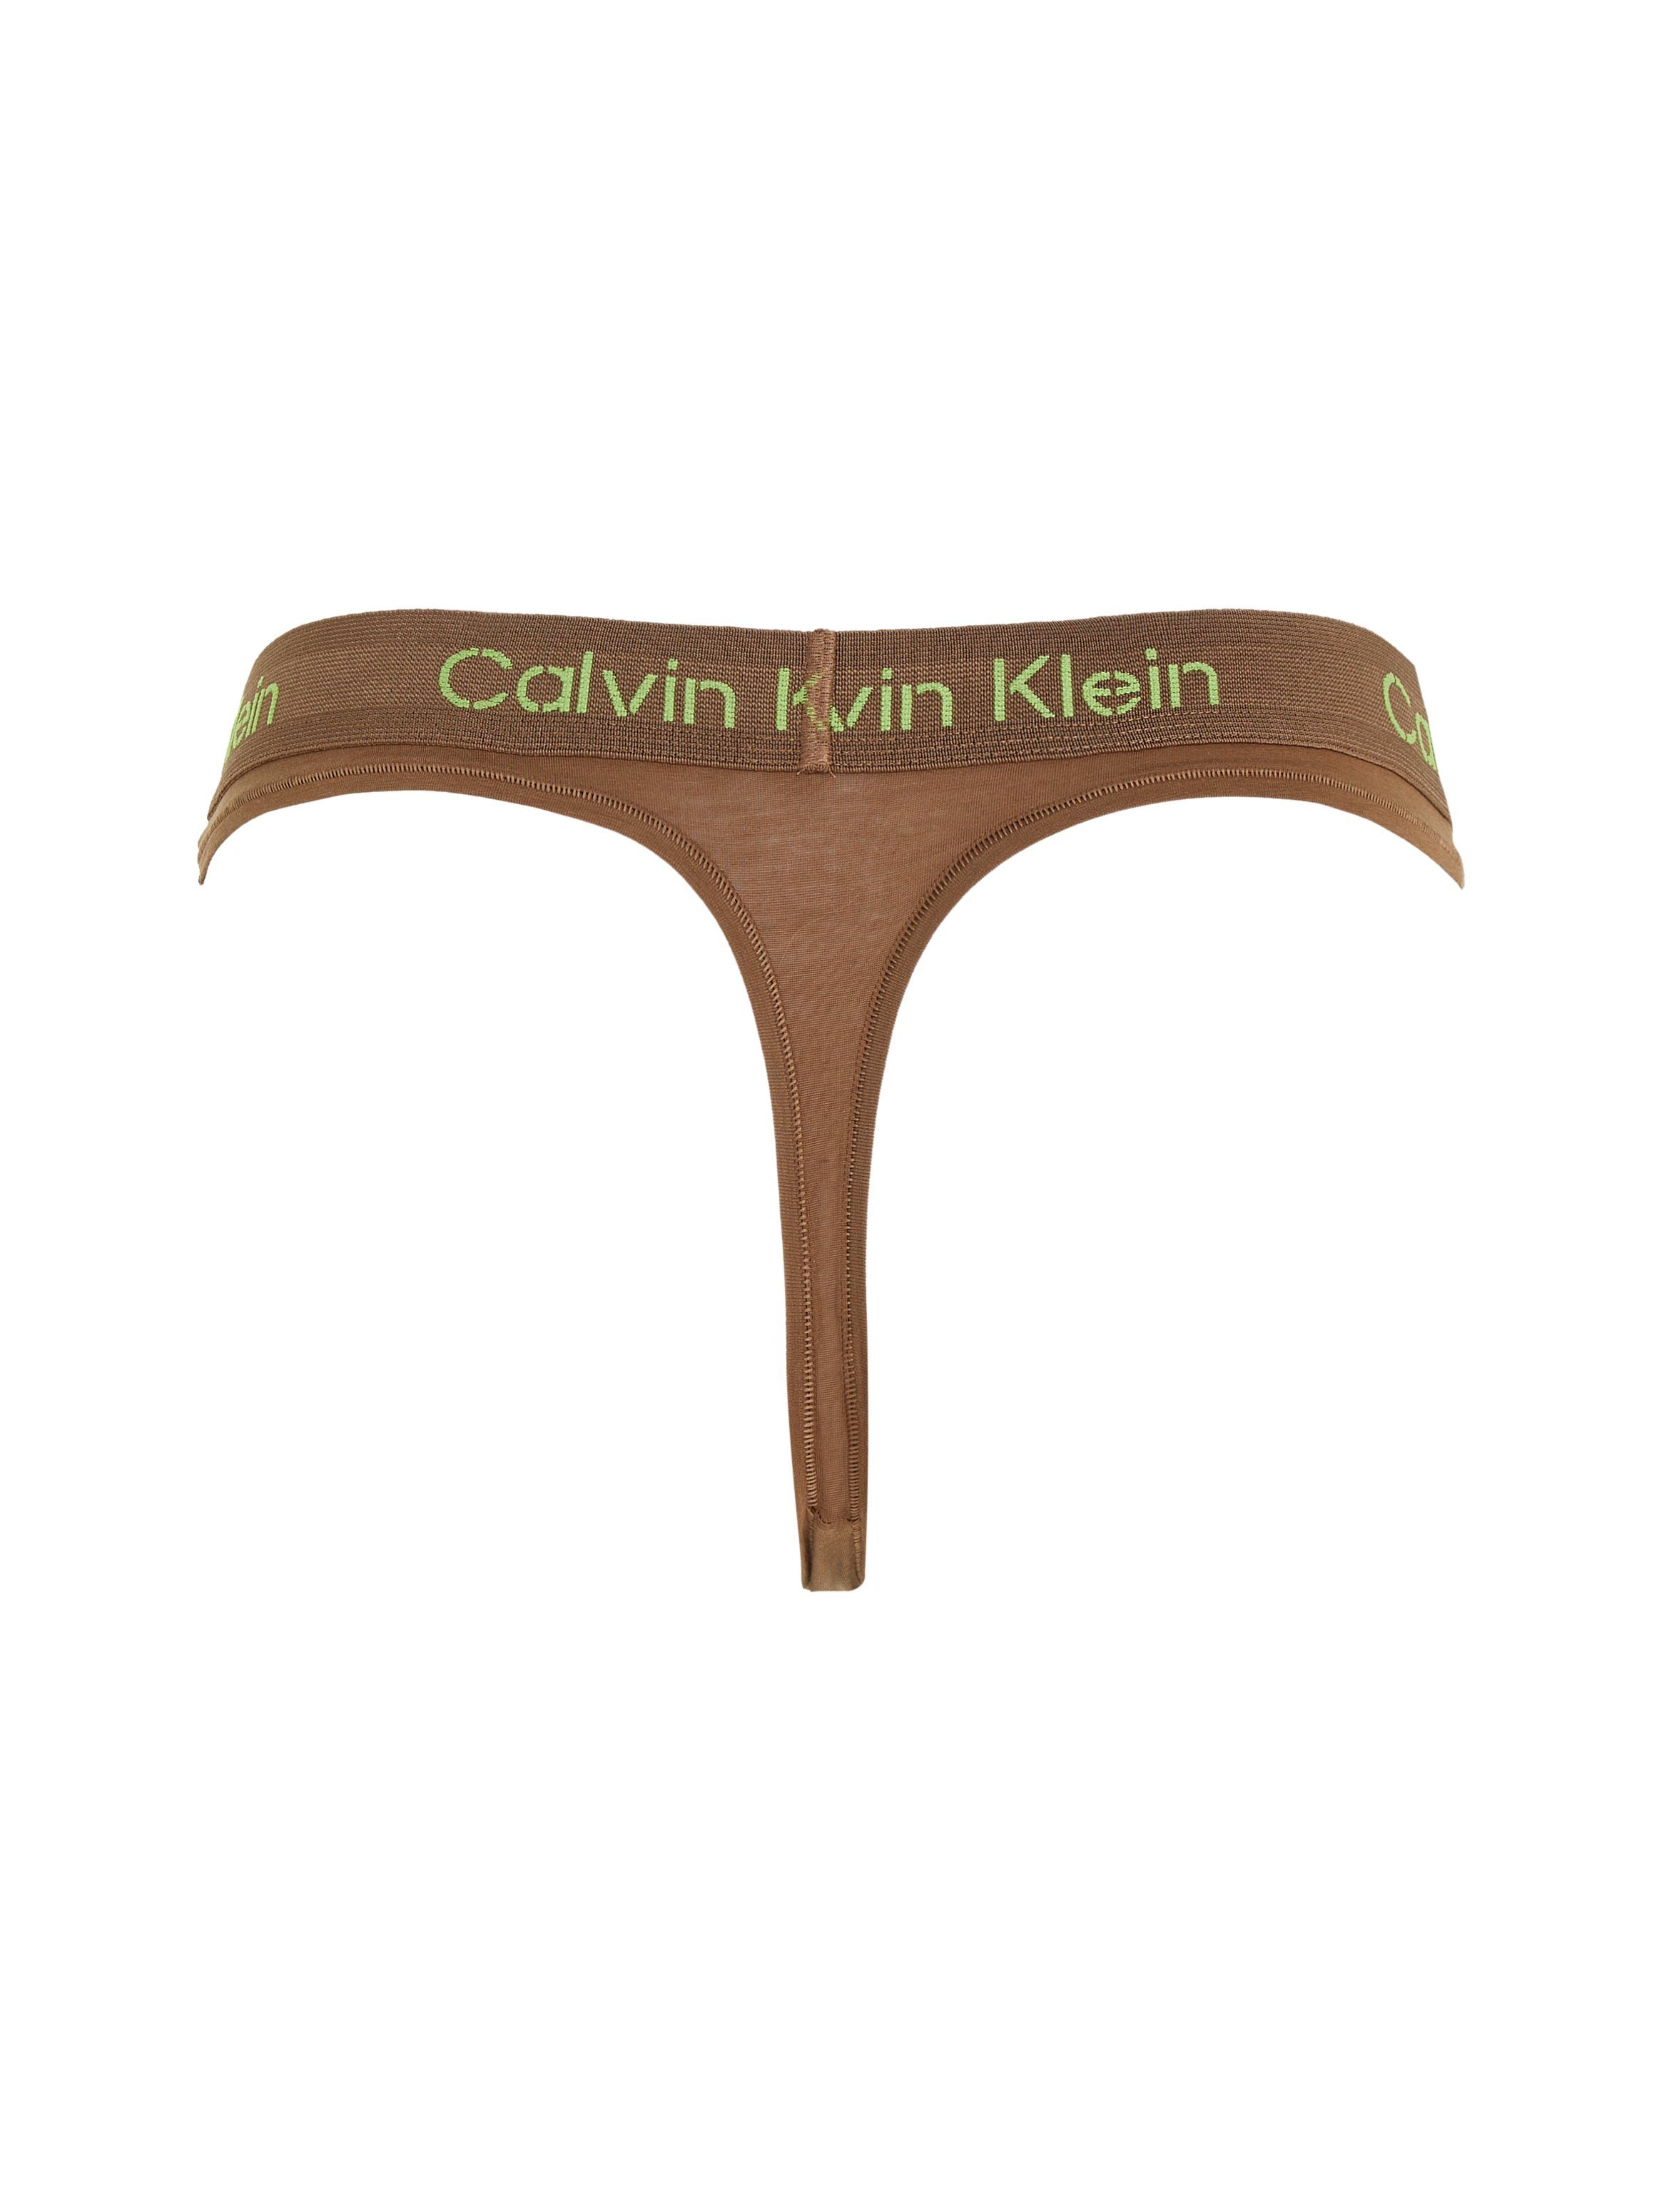 Calvin Klein Underwear CK-Logoschriftzug T-String THONG Bund ecru am mit